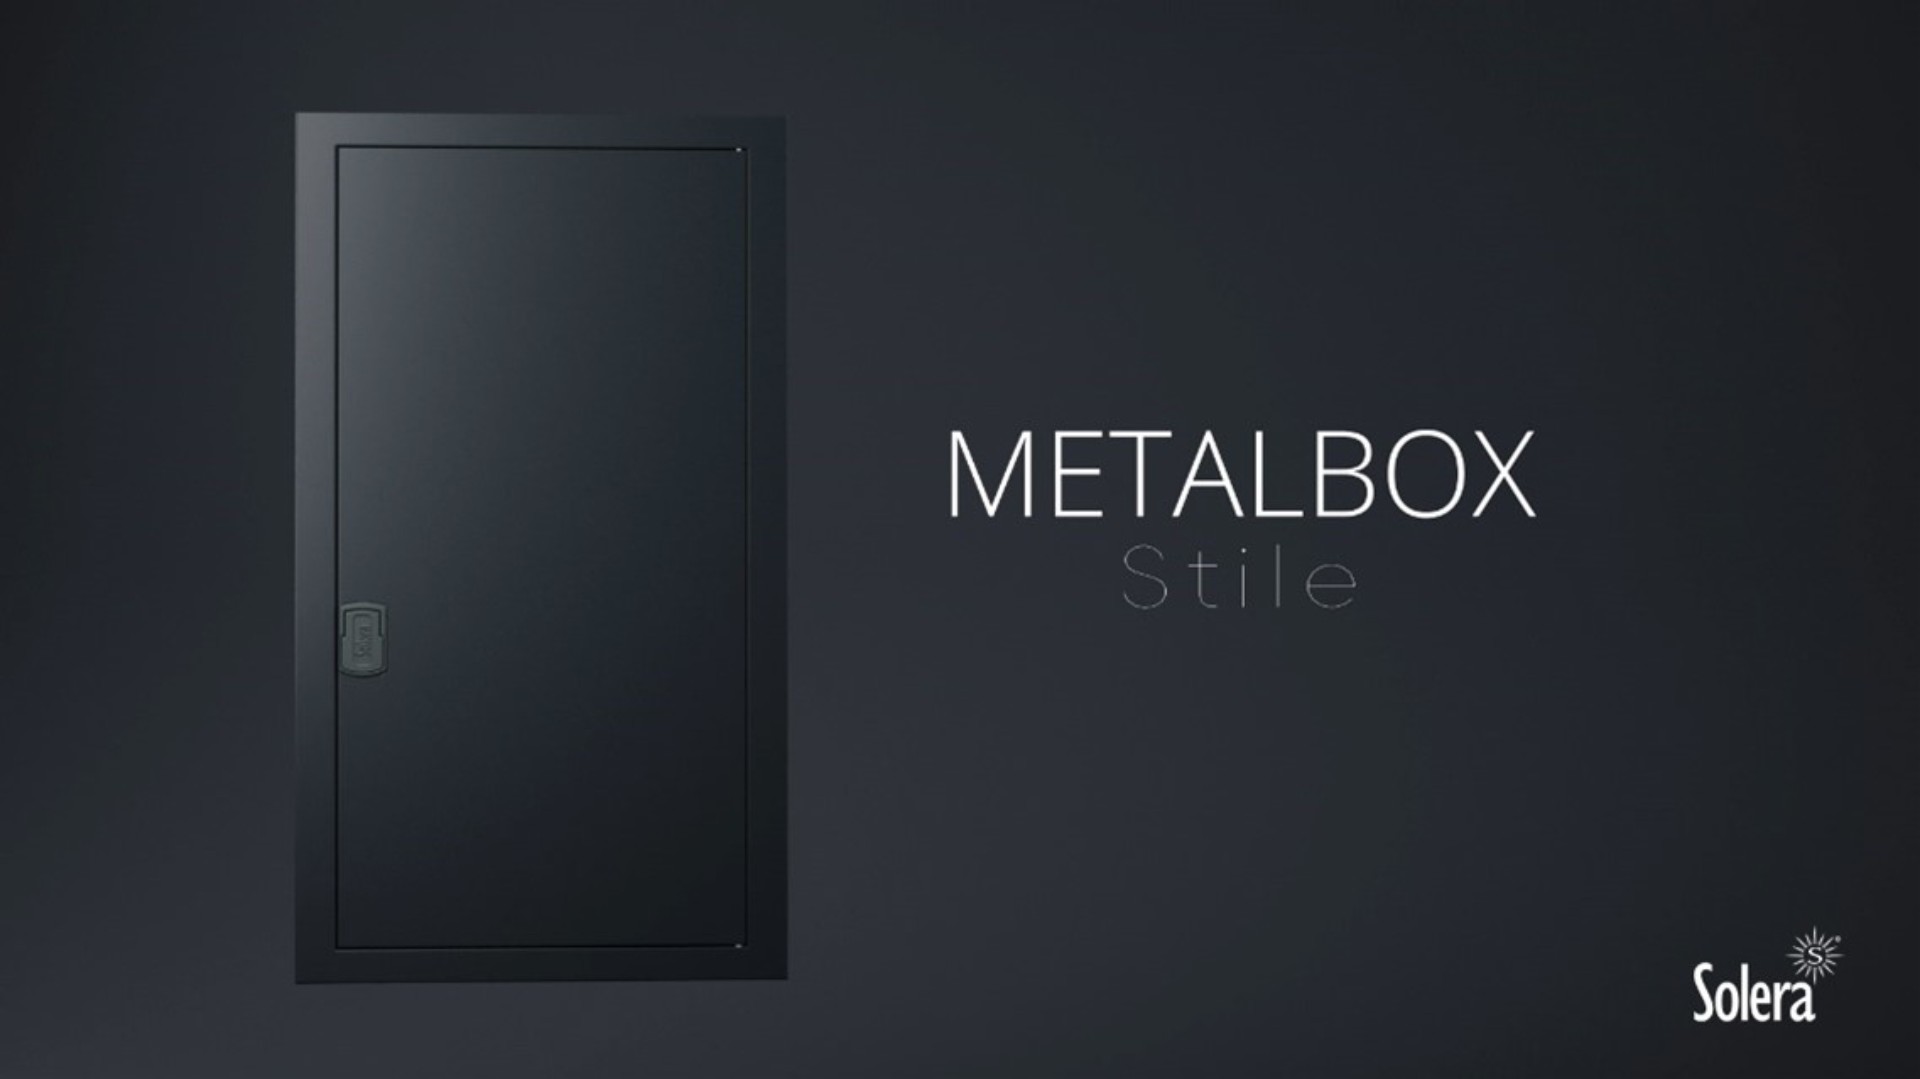 Stile, a nova gama da caixa de distribuição Metalbox